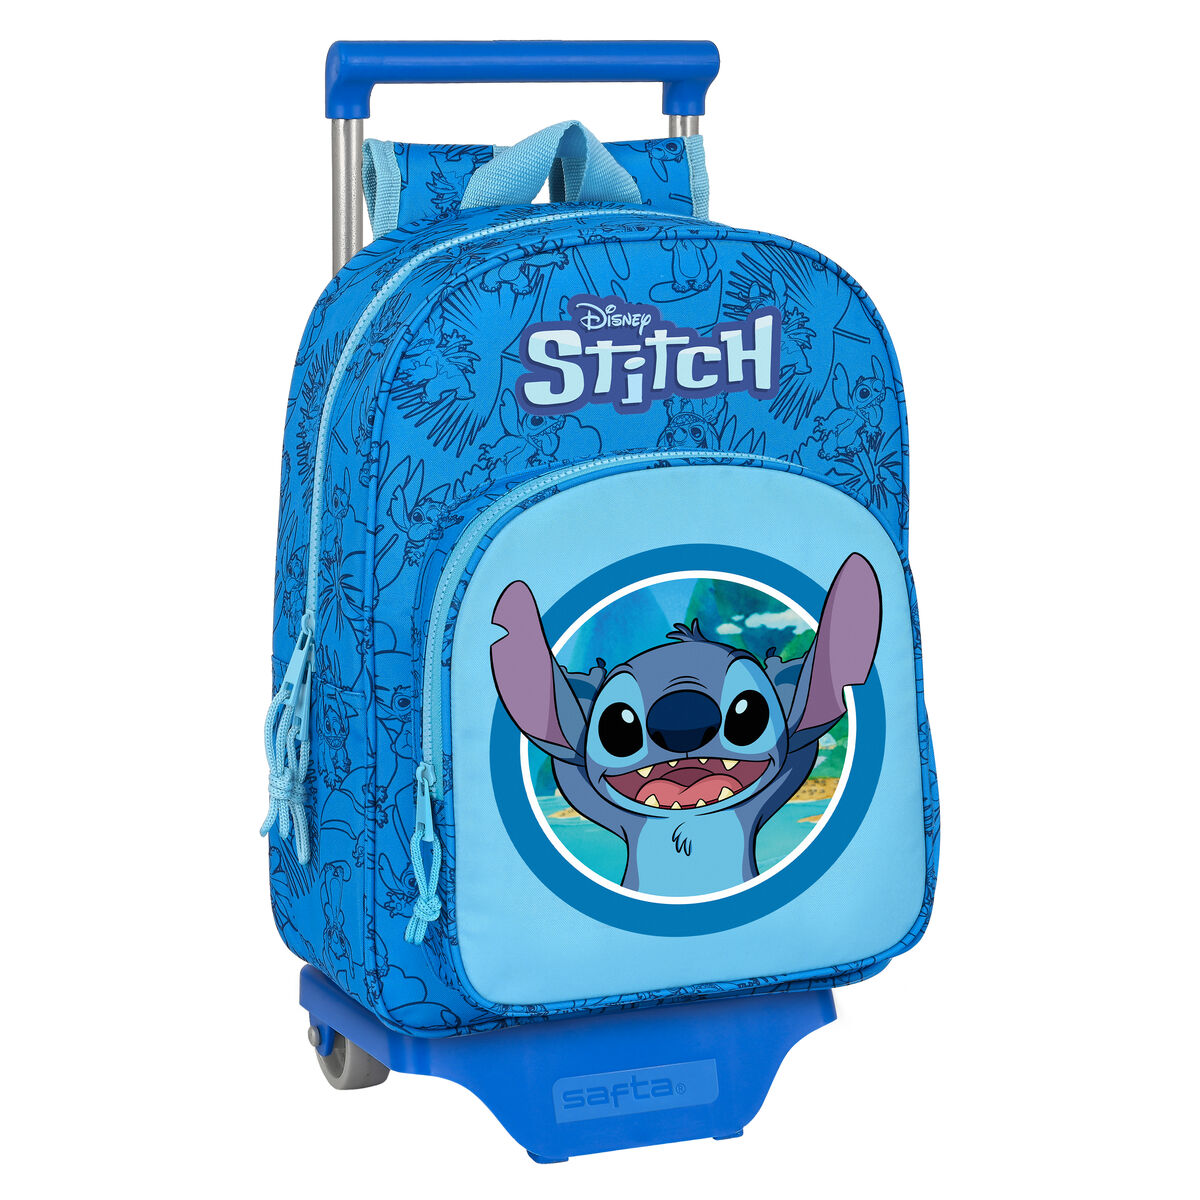 Disney - Mochila escolar de Stitch multicolor para niños, Otras Licencias